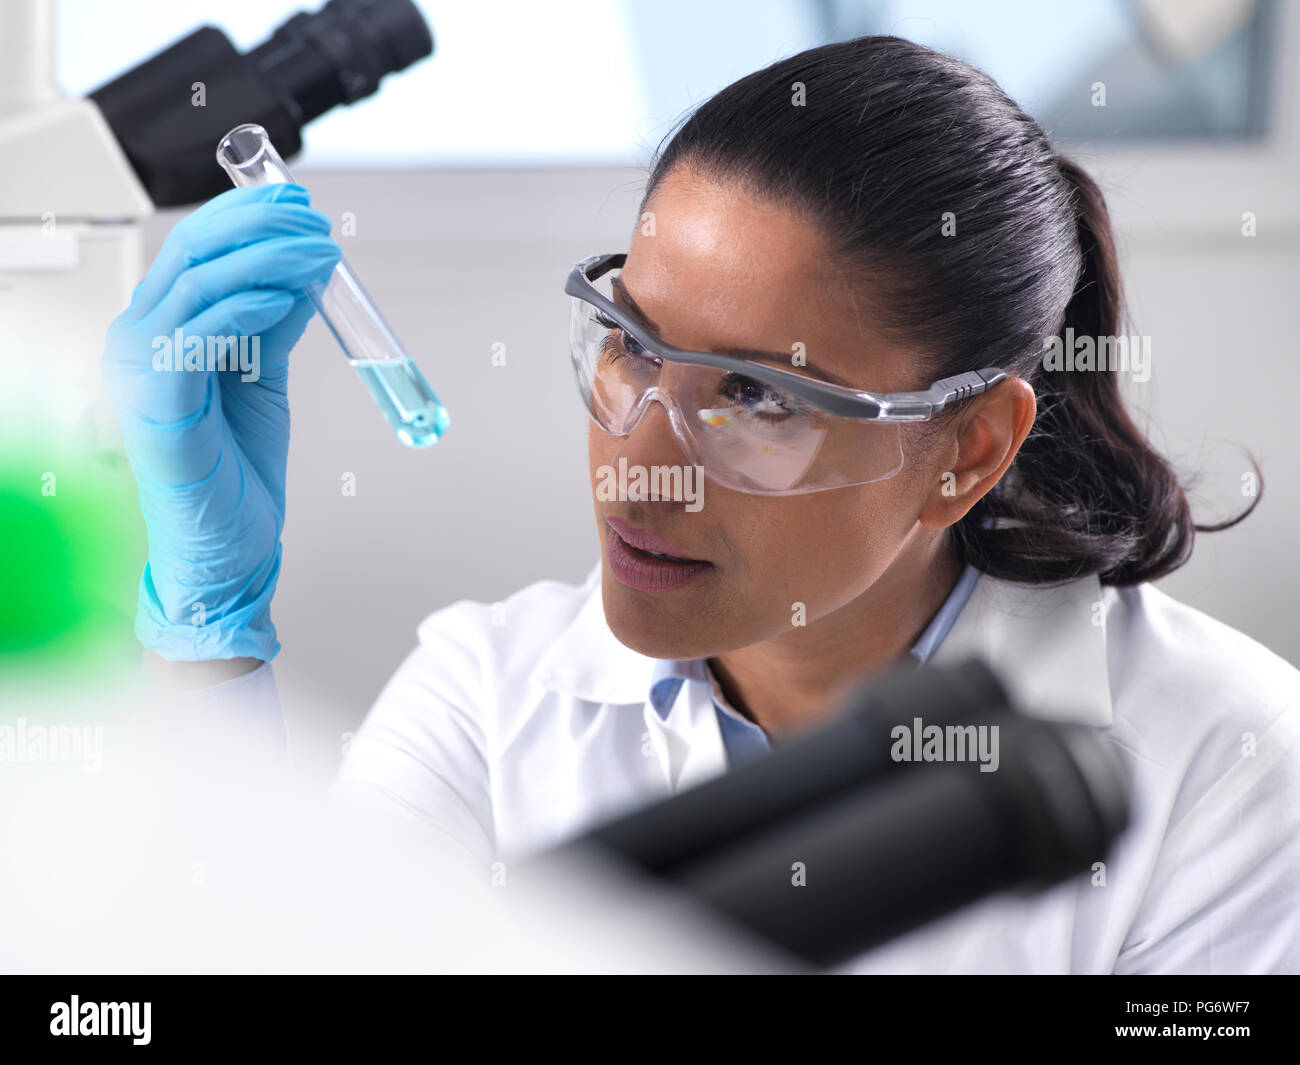 La investigación en biotecnología, investigadora mezcla una fórmula química Foto de stock